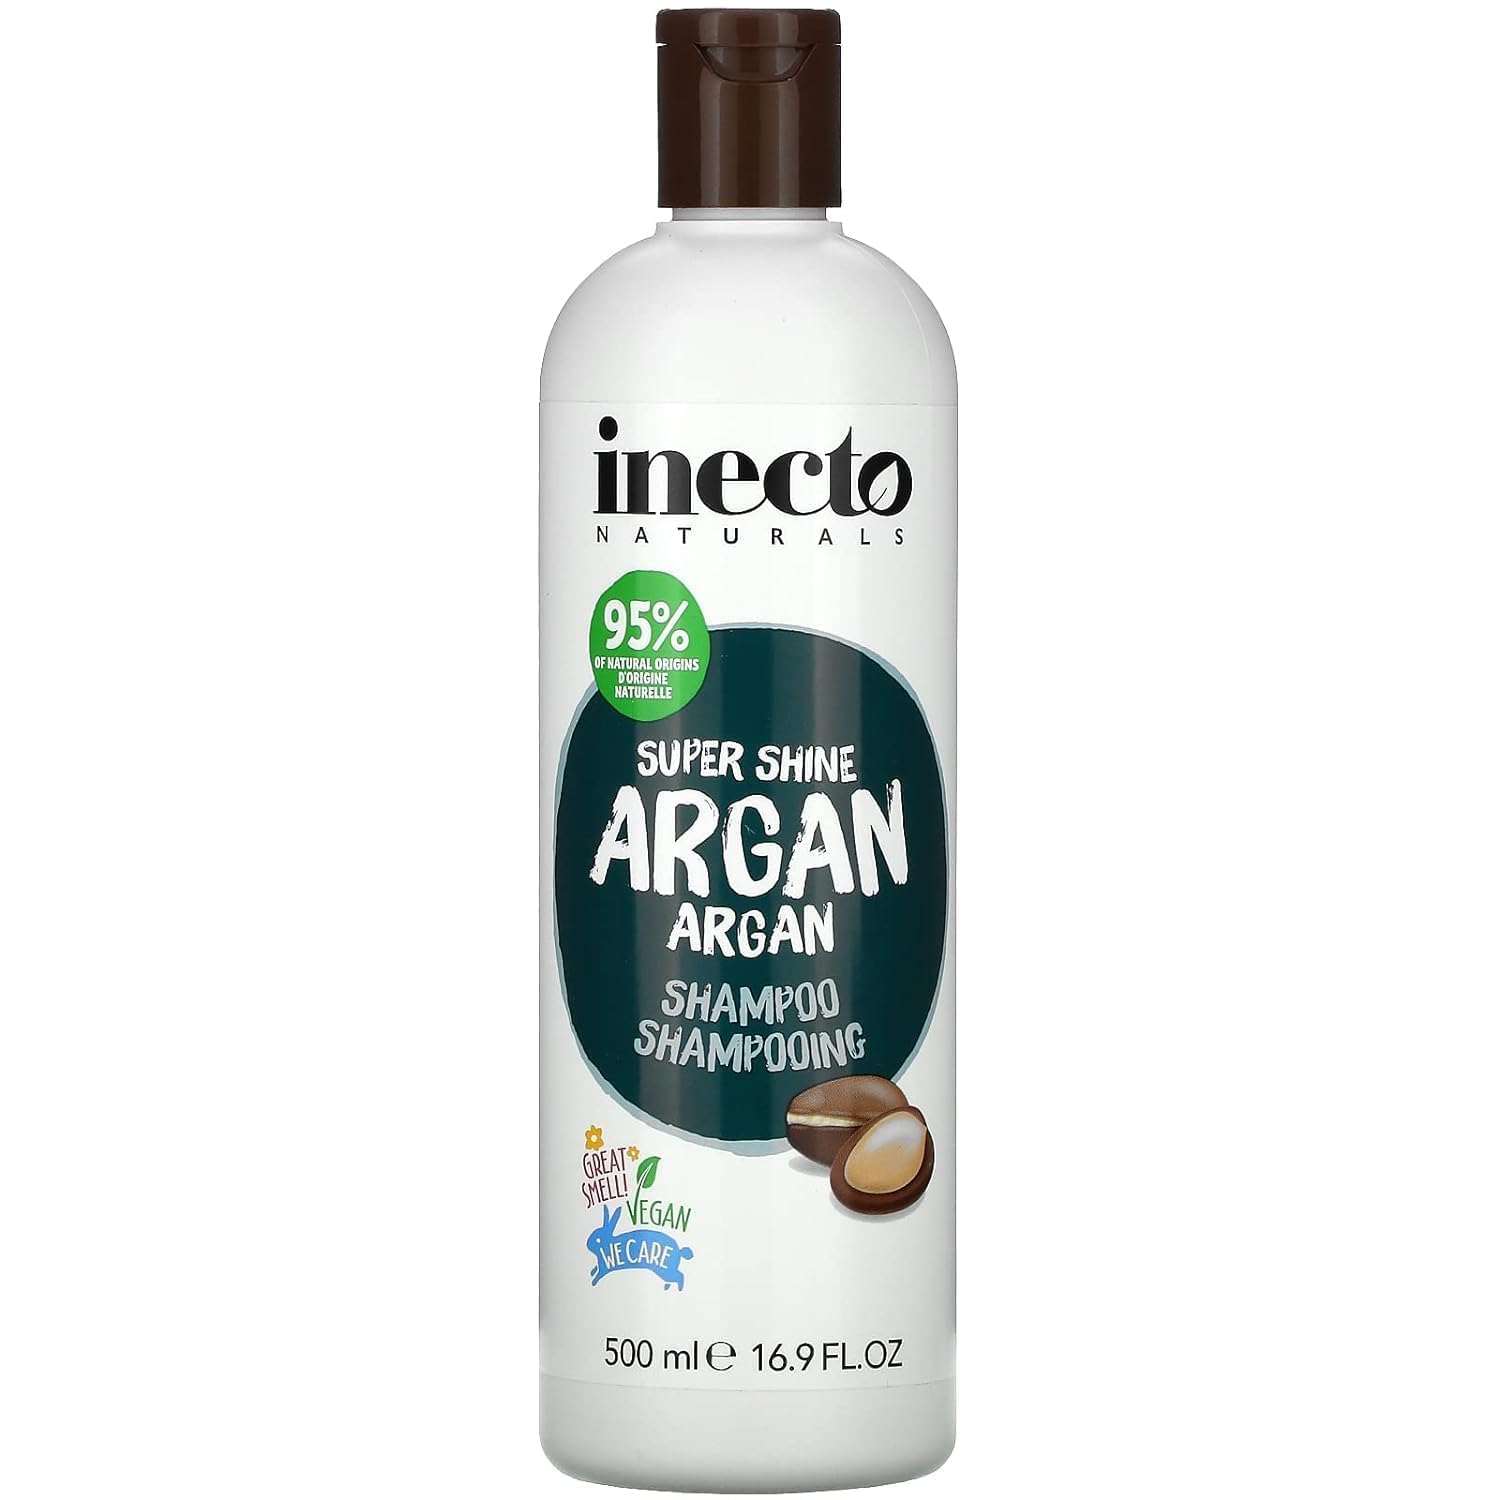 inecto szampon wizaz argan